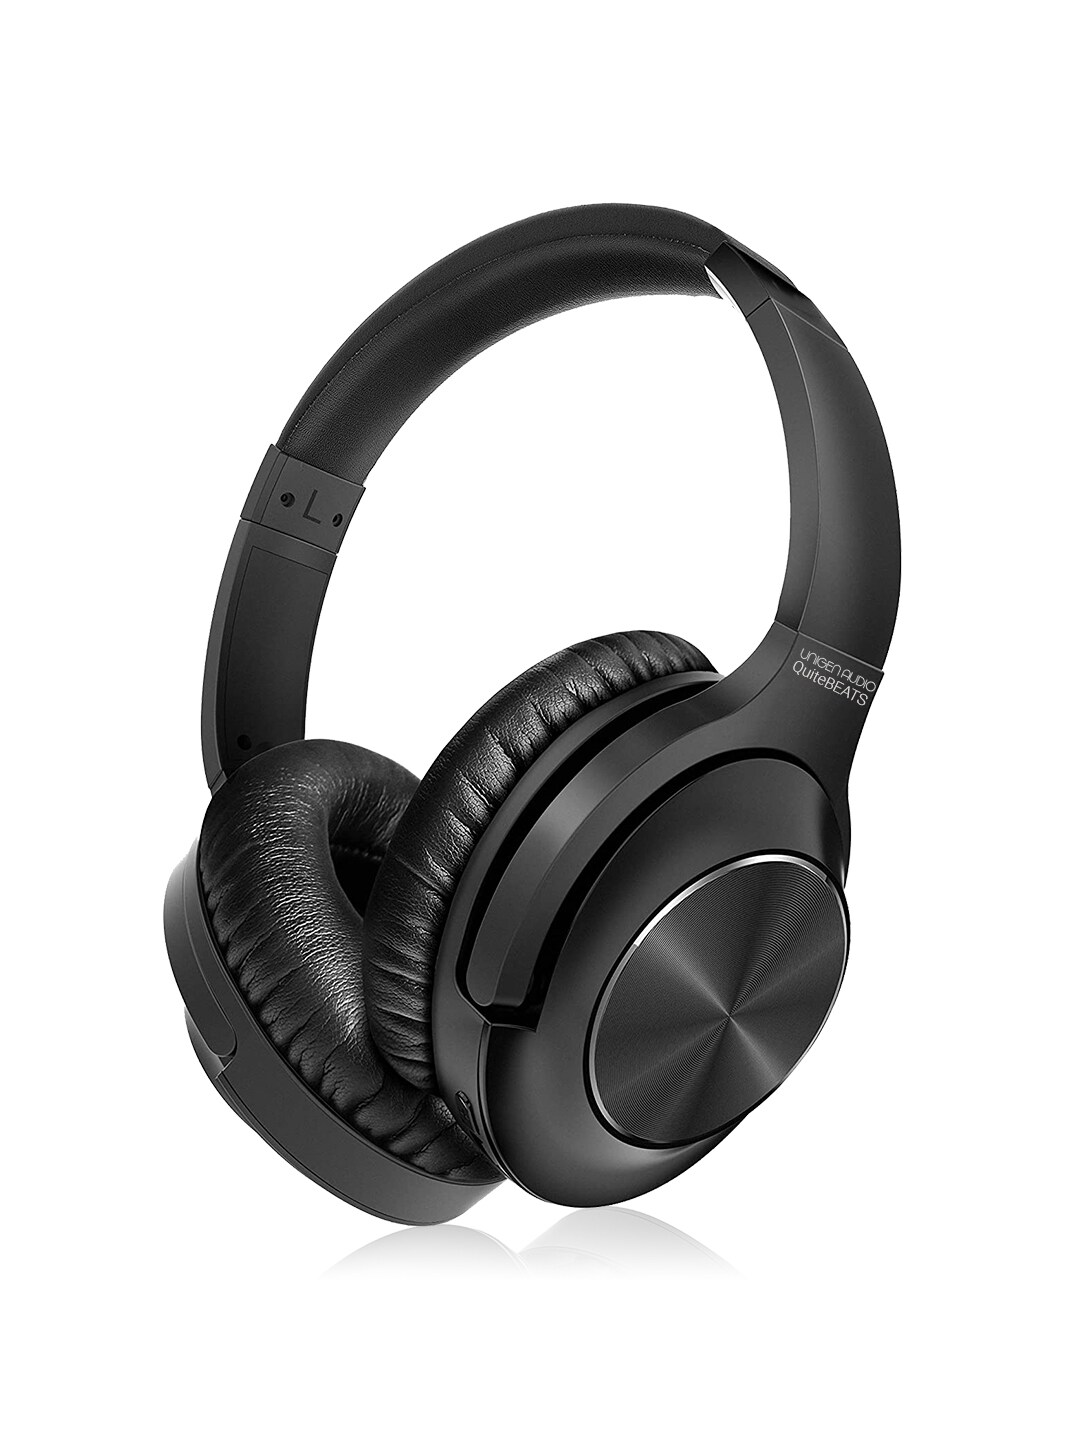 UNIGEN AUDIO Unisex Black Solid ANC Bluetooth Headphones Price in India